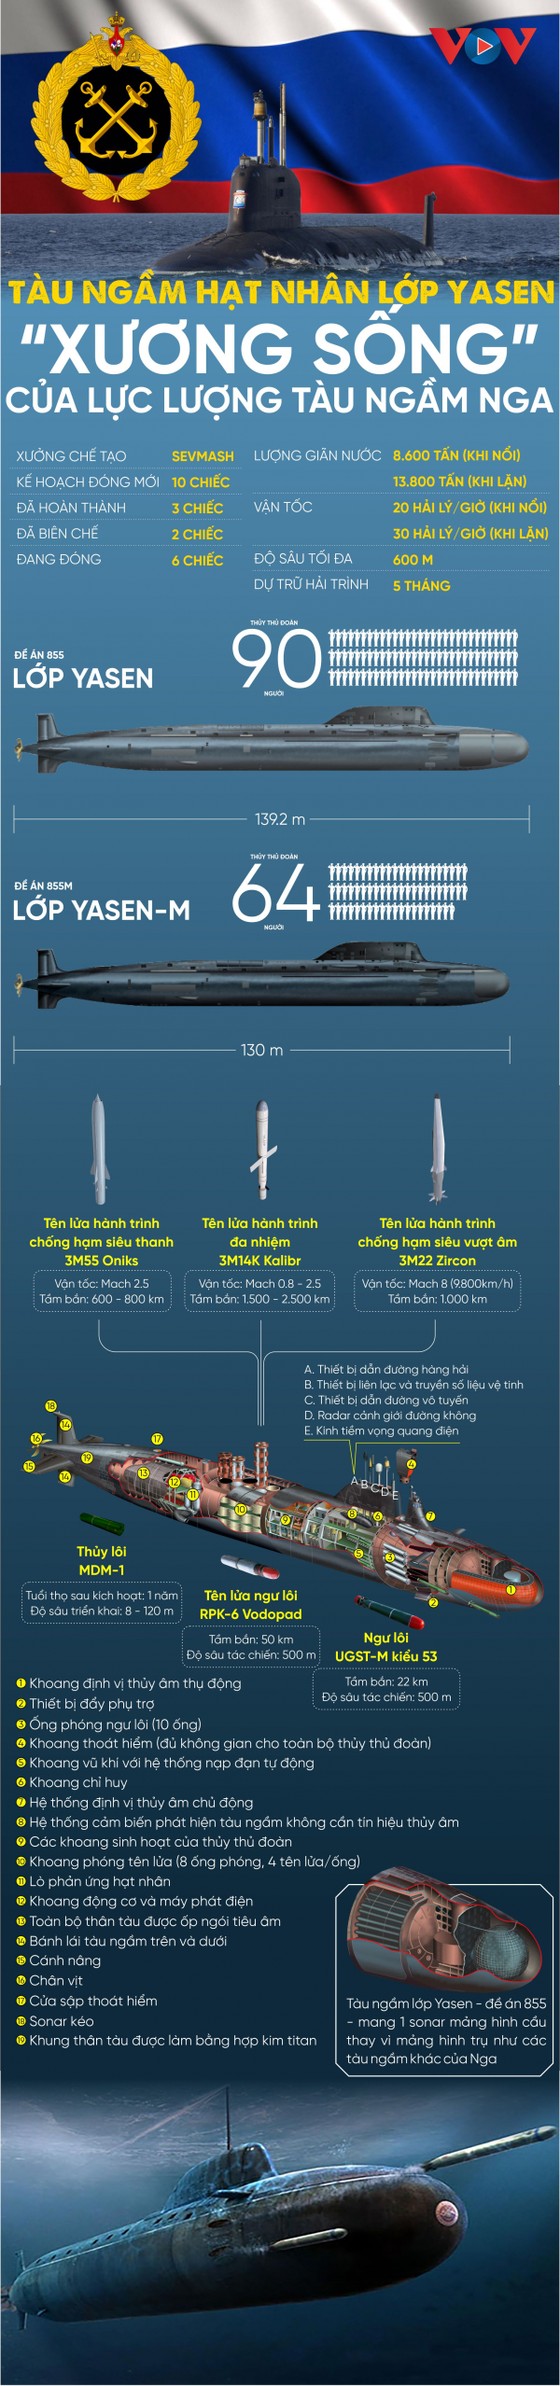 Tàu ngầm lớp Yasen - "xương sống" của hải quân Nga ảnh 1